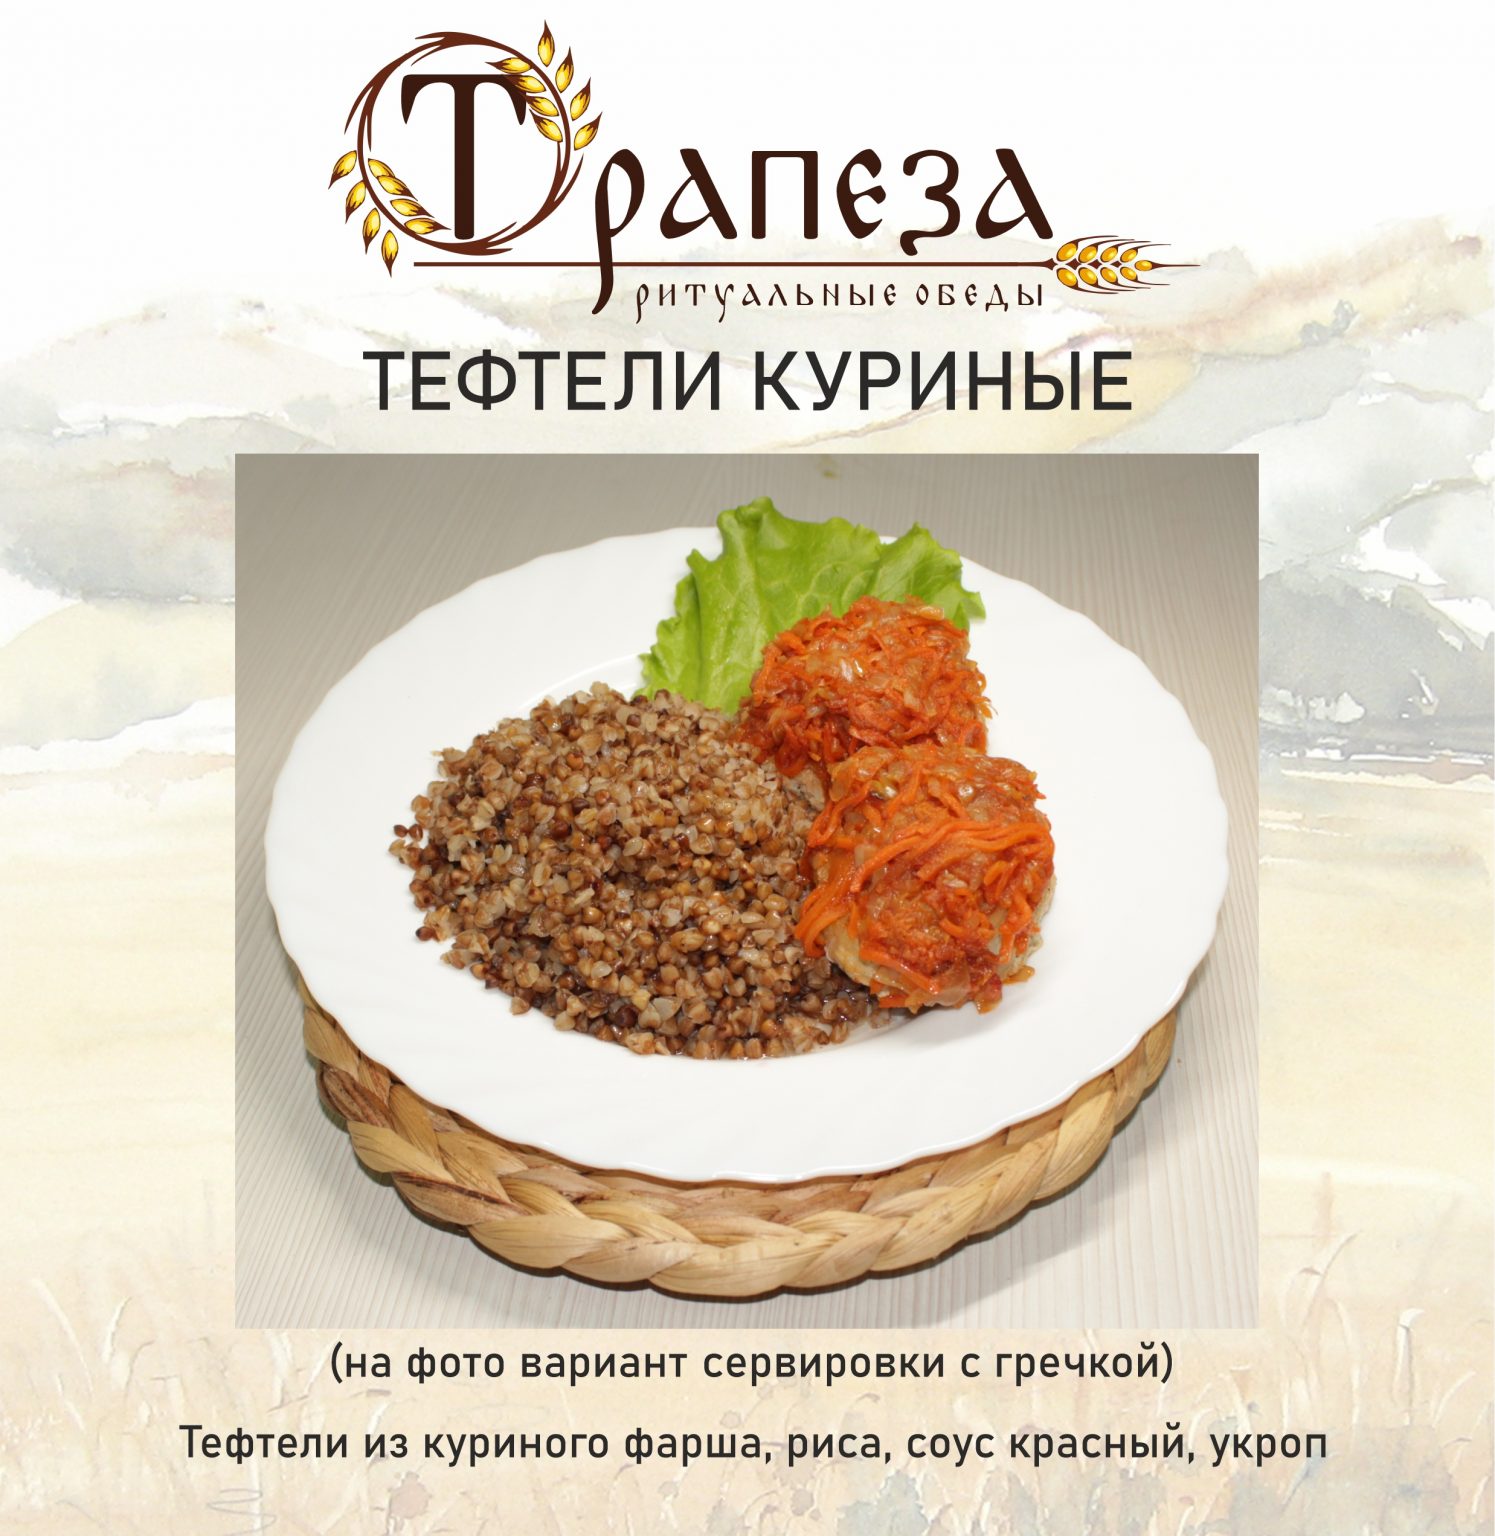 Горячие блюда Саратов